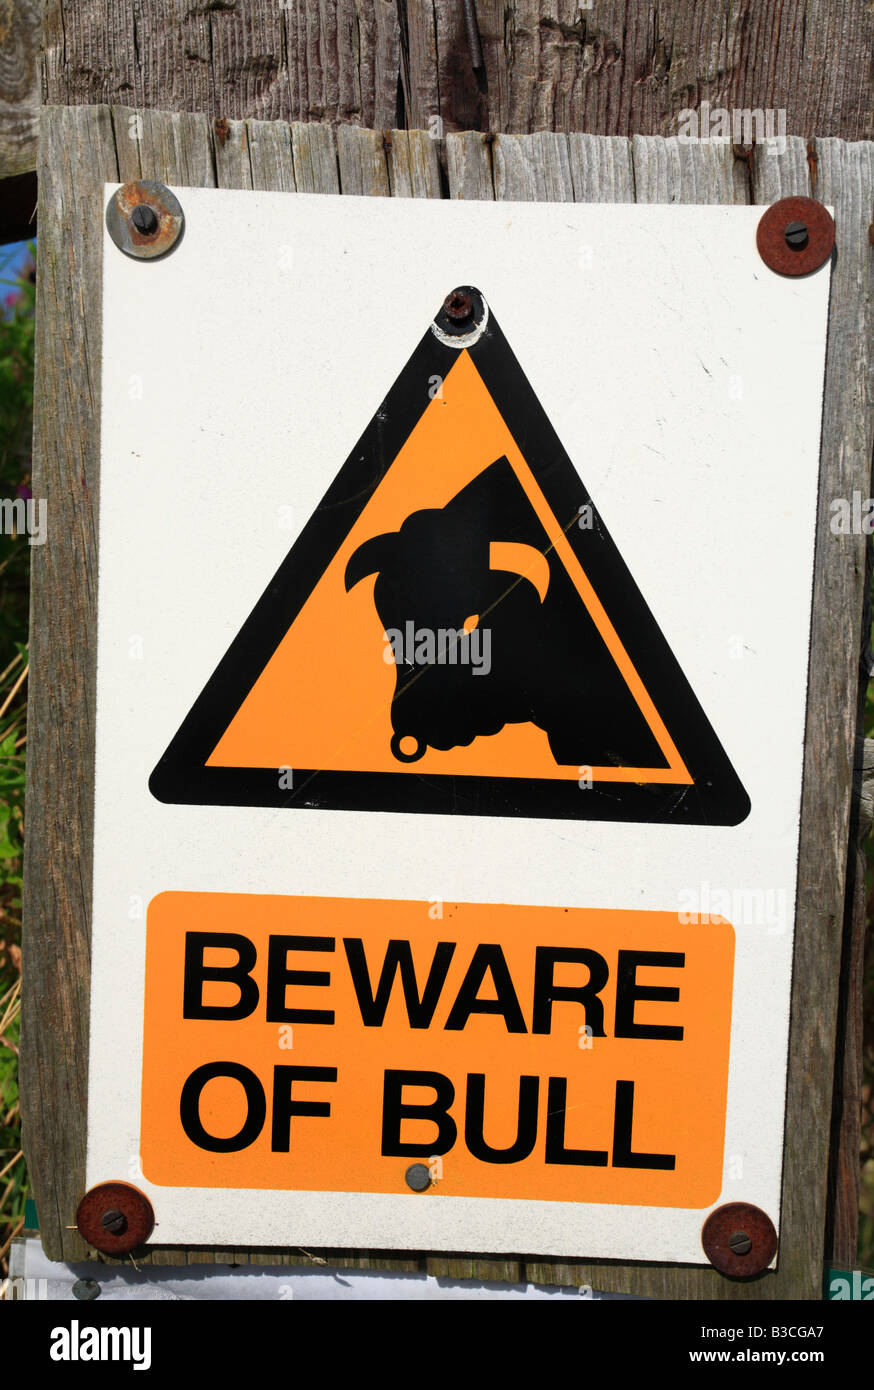 A warning sign stating 'BEWARE OF BULL'. Stock Photo